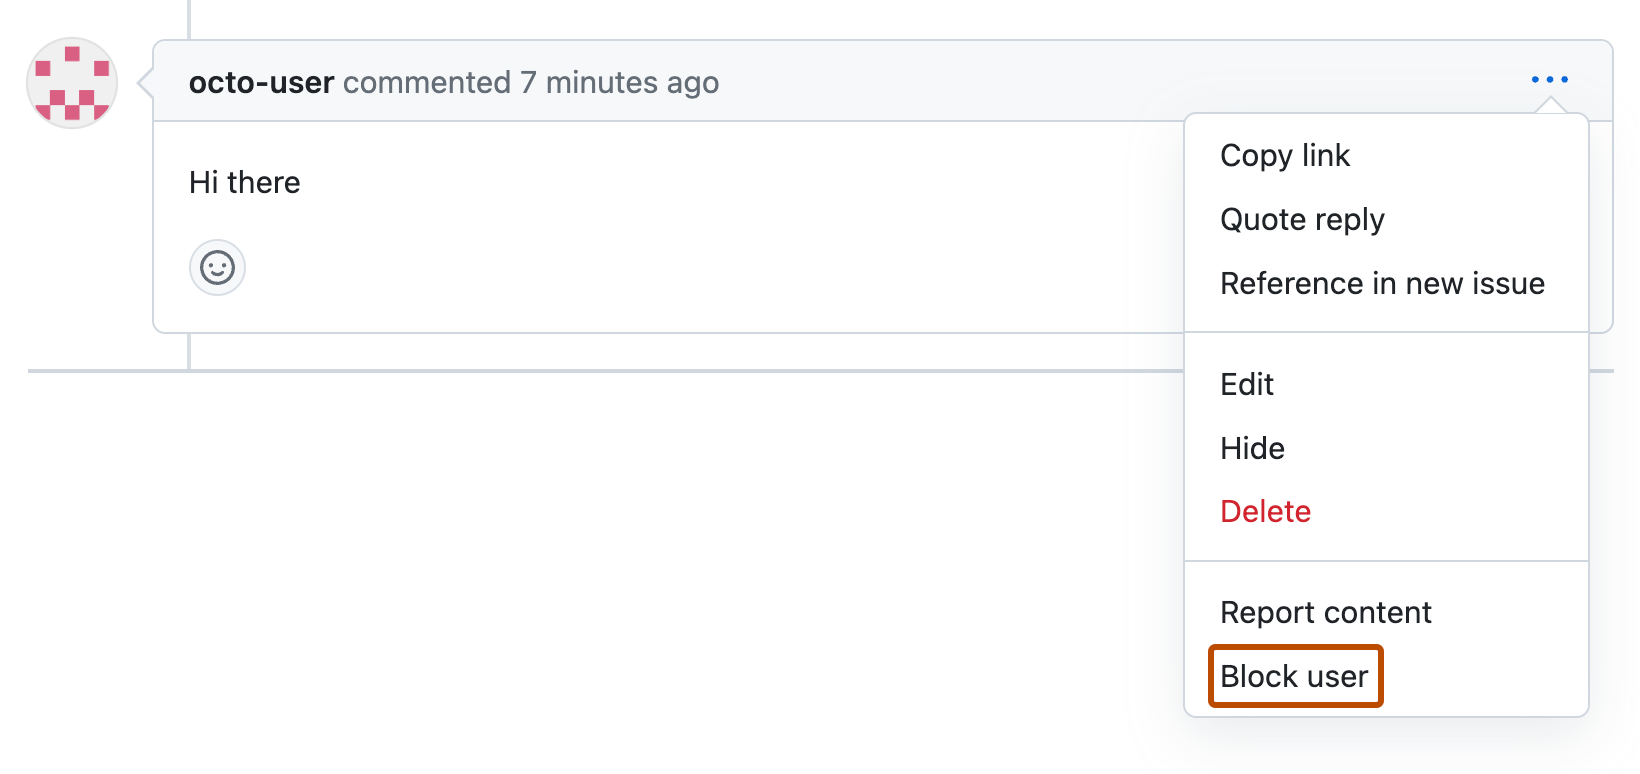 Captura de pantalla de un comentario de solicitud de cambios de octo-user. Debajo de un icono de tres puntos horizontales, se expande un menú desplegable y aparece la opción "Bloquear usuario" con un contorno naranja.